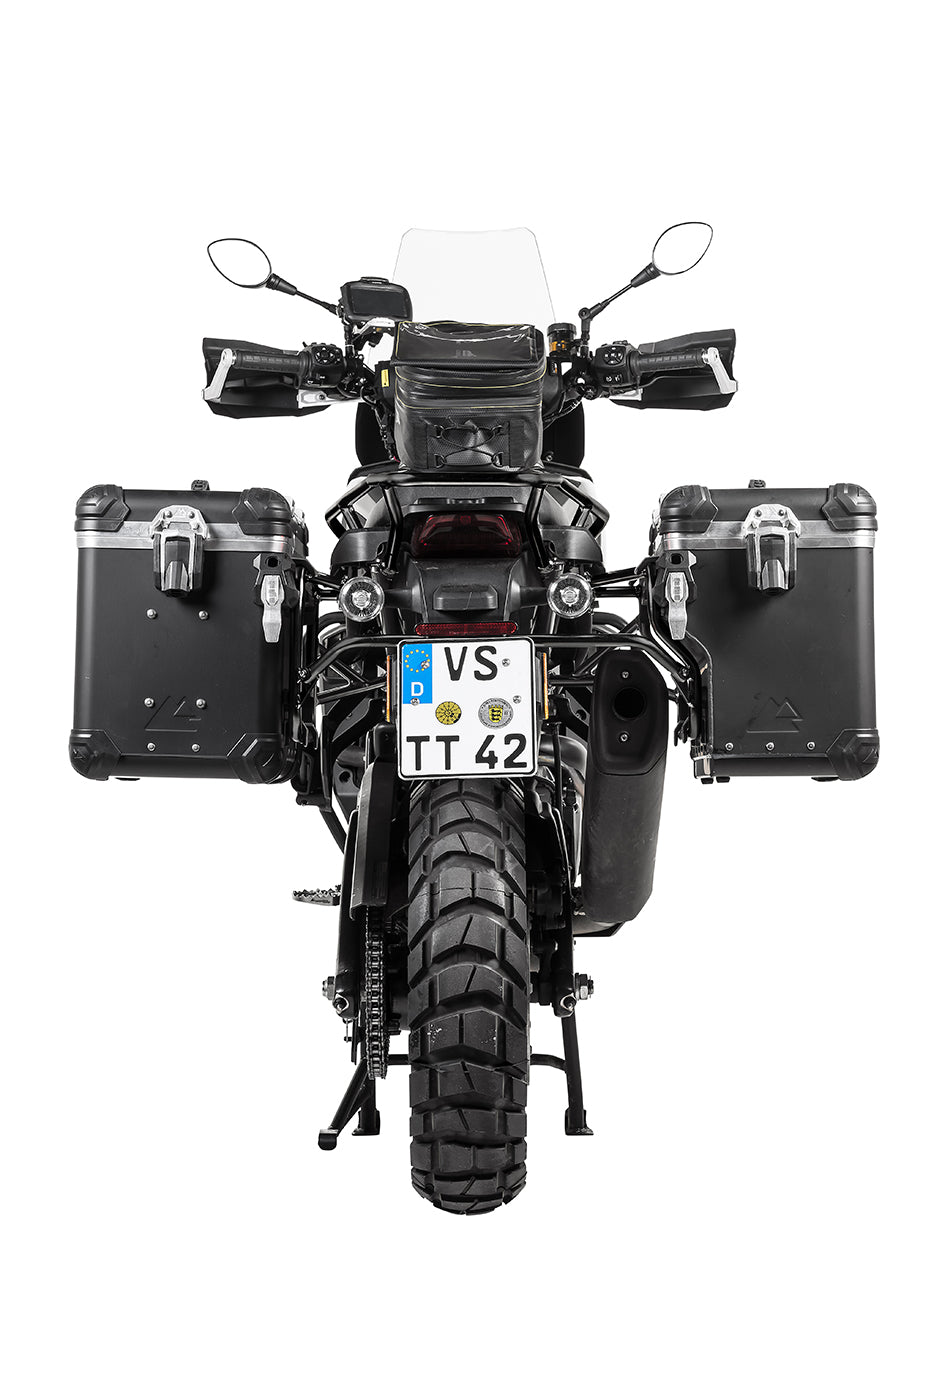 ZEGA Evo X "Premium Edition" Sondersystem "And-Black" 45/45 ltr.  mit Edelstahlträger schwarz  inkl. 2x Innentaschen und 6x Schlössern für Harley-Davidson RA1250 Pan America